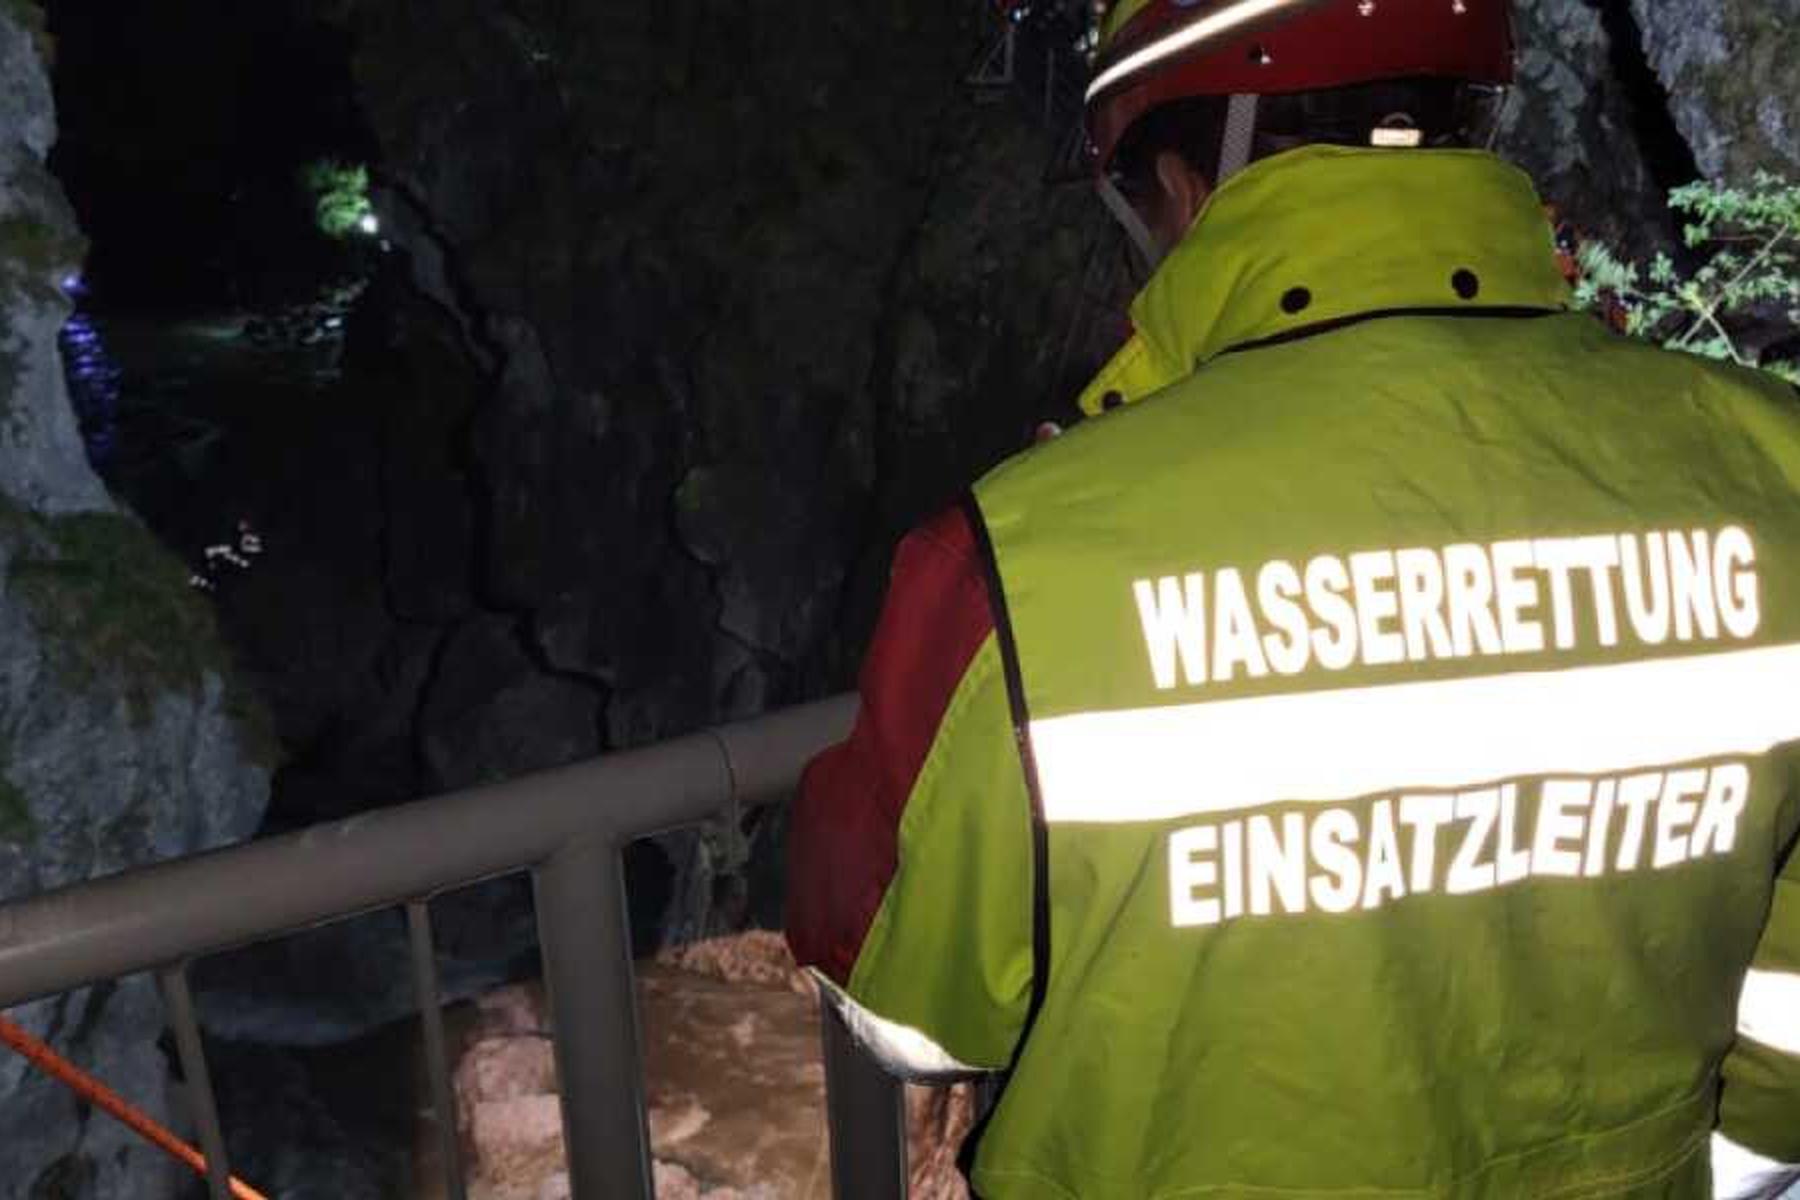 Scheffau: Wassersportler kam bei Kajakunfall im Tennengau ums Leben